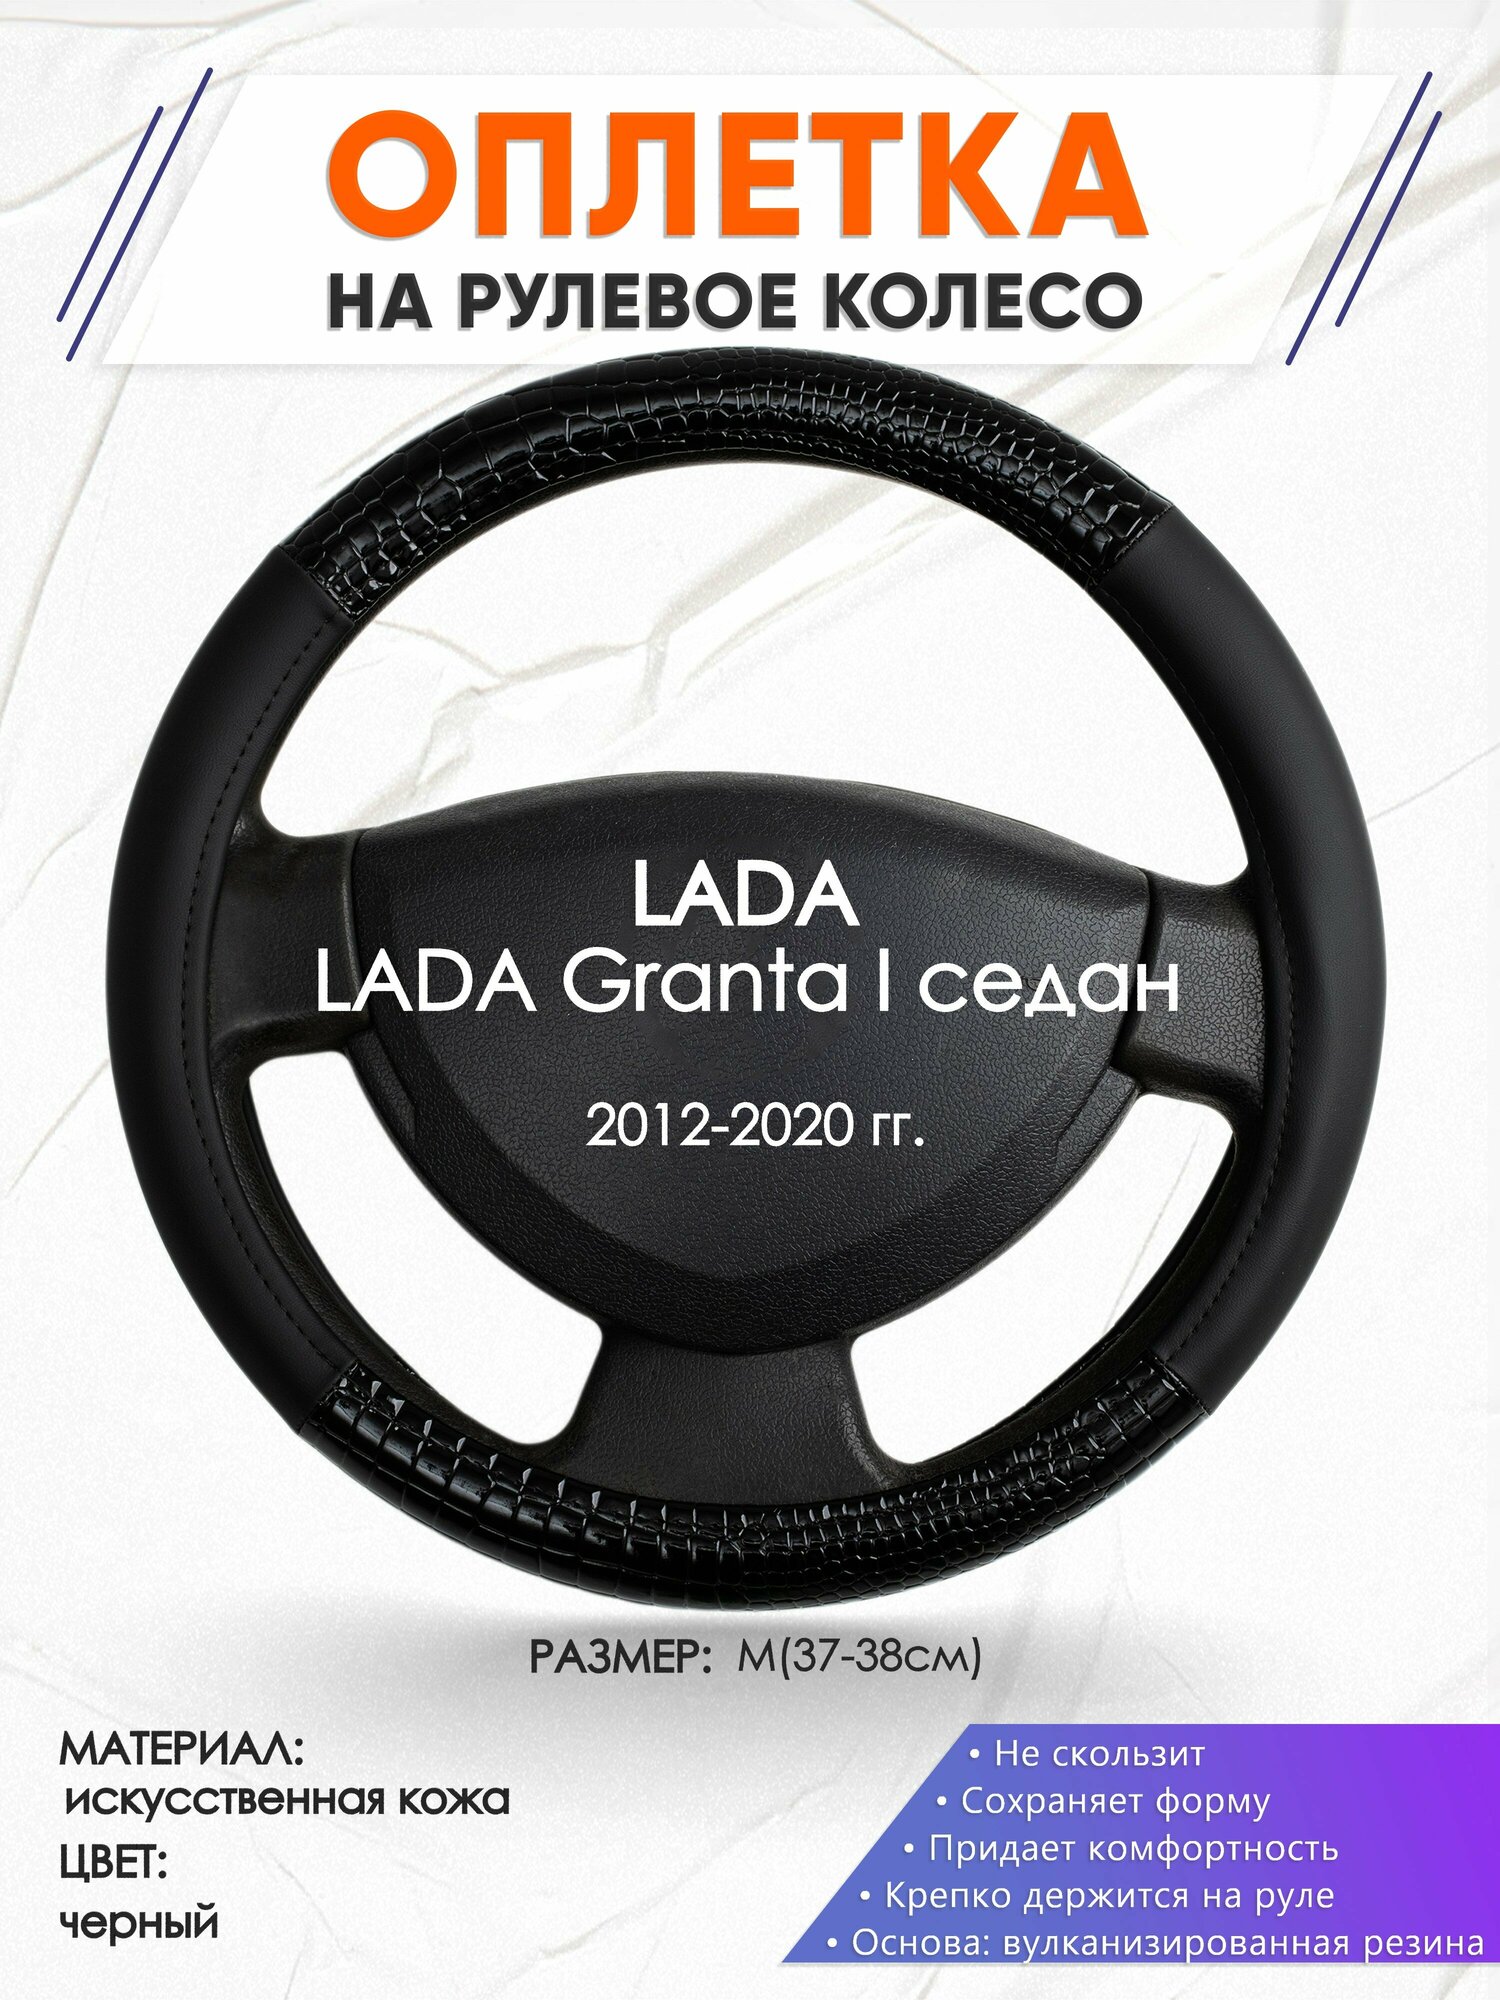 Оплетка наруль для LADA Granta I седан(Лада Гранта) 2012-2020 годов выпуска, размер M(37-38см), Искусственная кожа 83